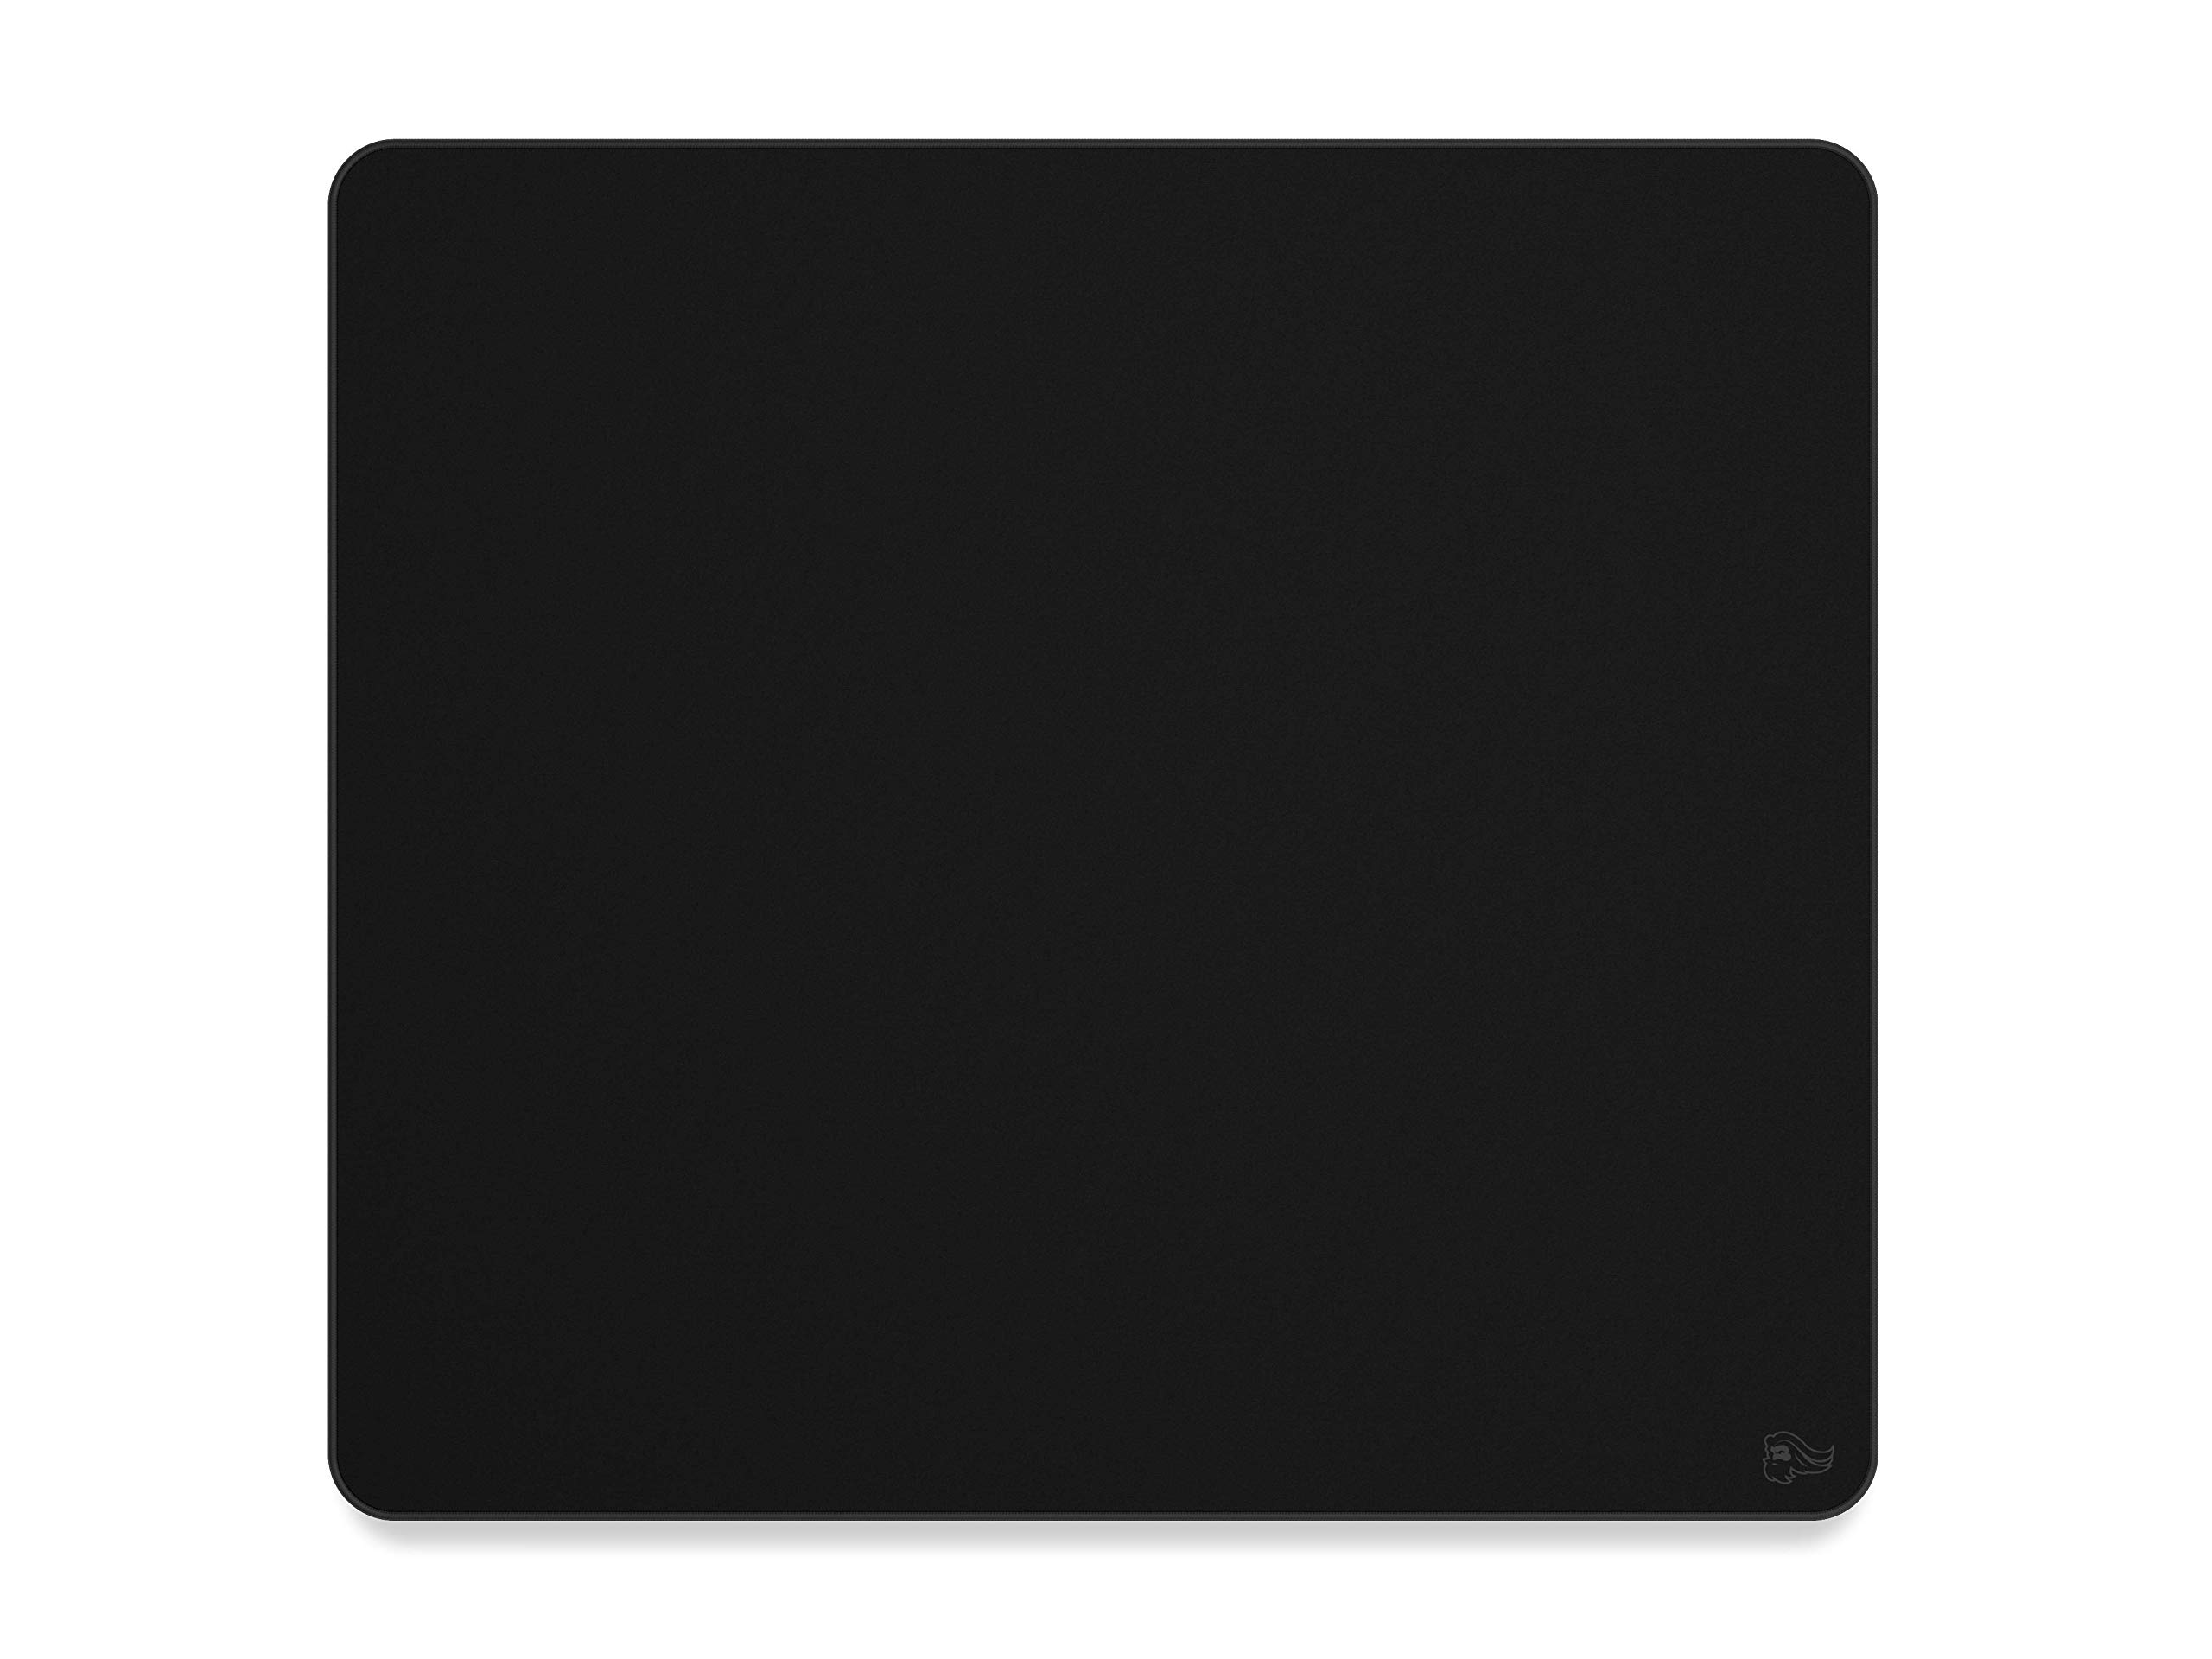 Glorious Gaming Cloth Gaming Mousepad (XL) - Gesteppte Ränder, Glatte Oberfläche für Speed & Control, rutschfeste Gummibasis, waschmaschinenfest, groß (460 x 410 x 2mm) - Black Stealth